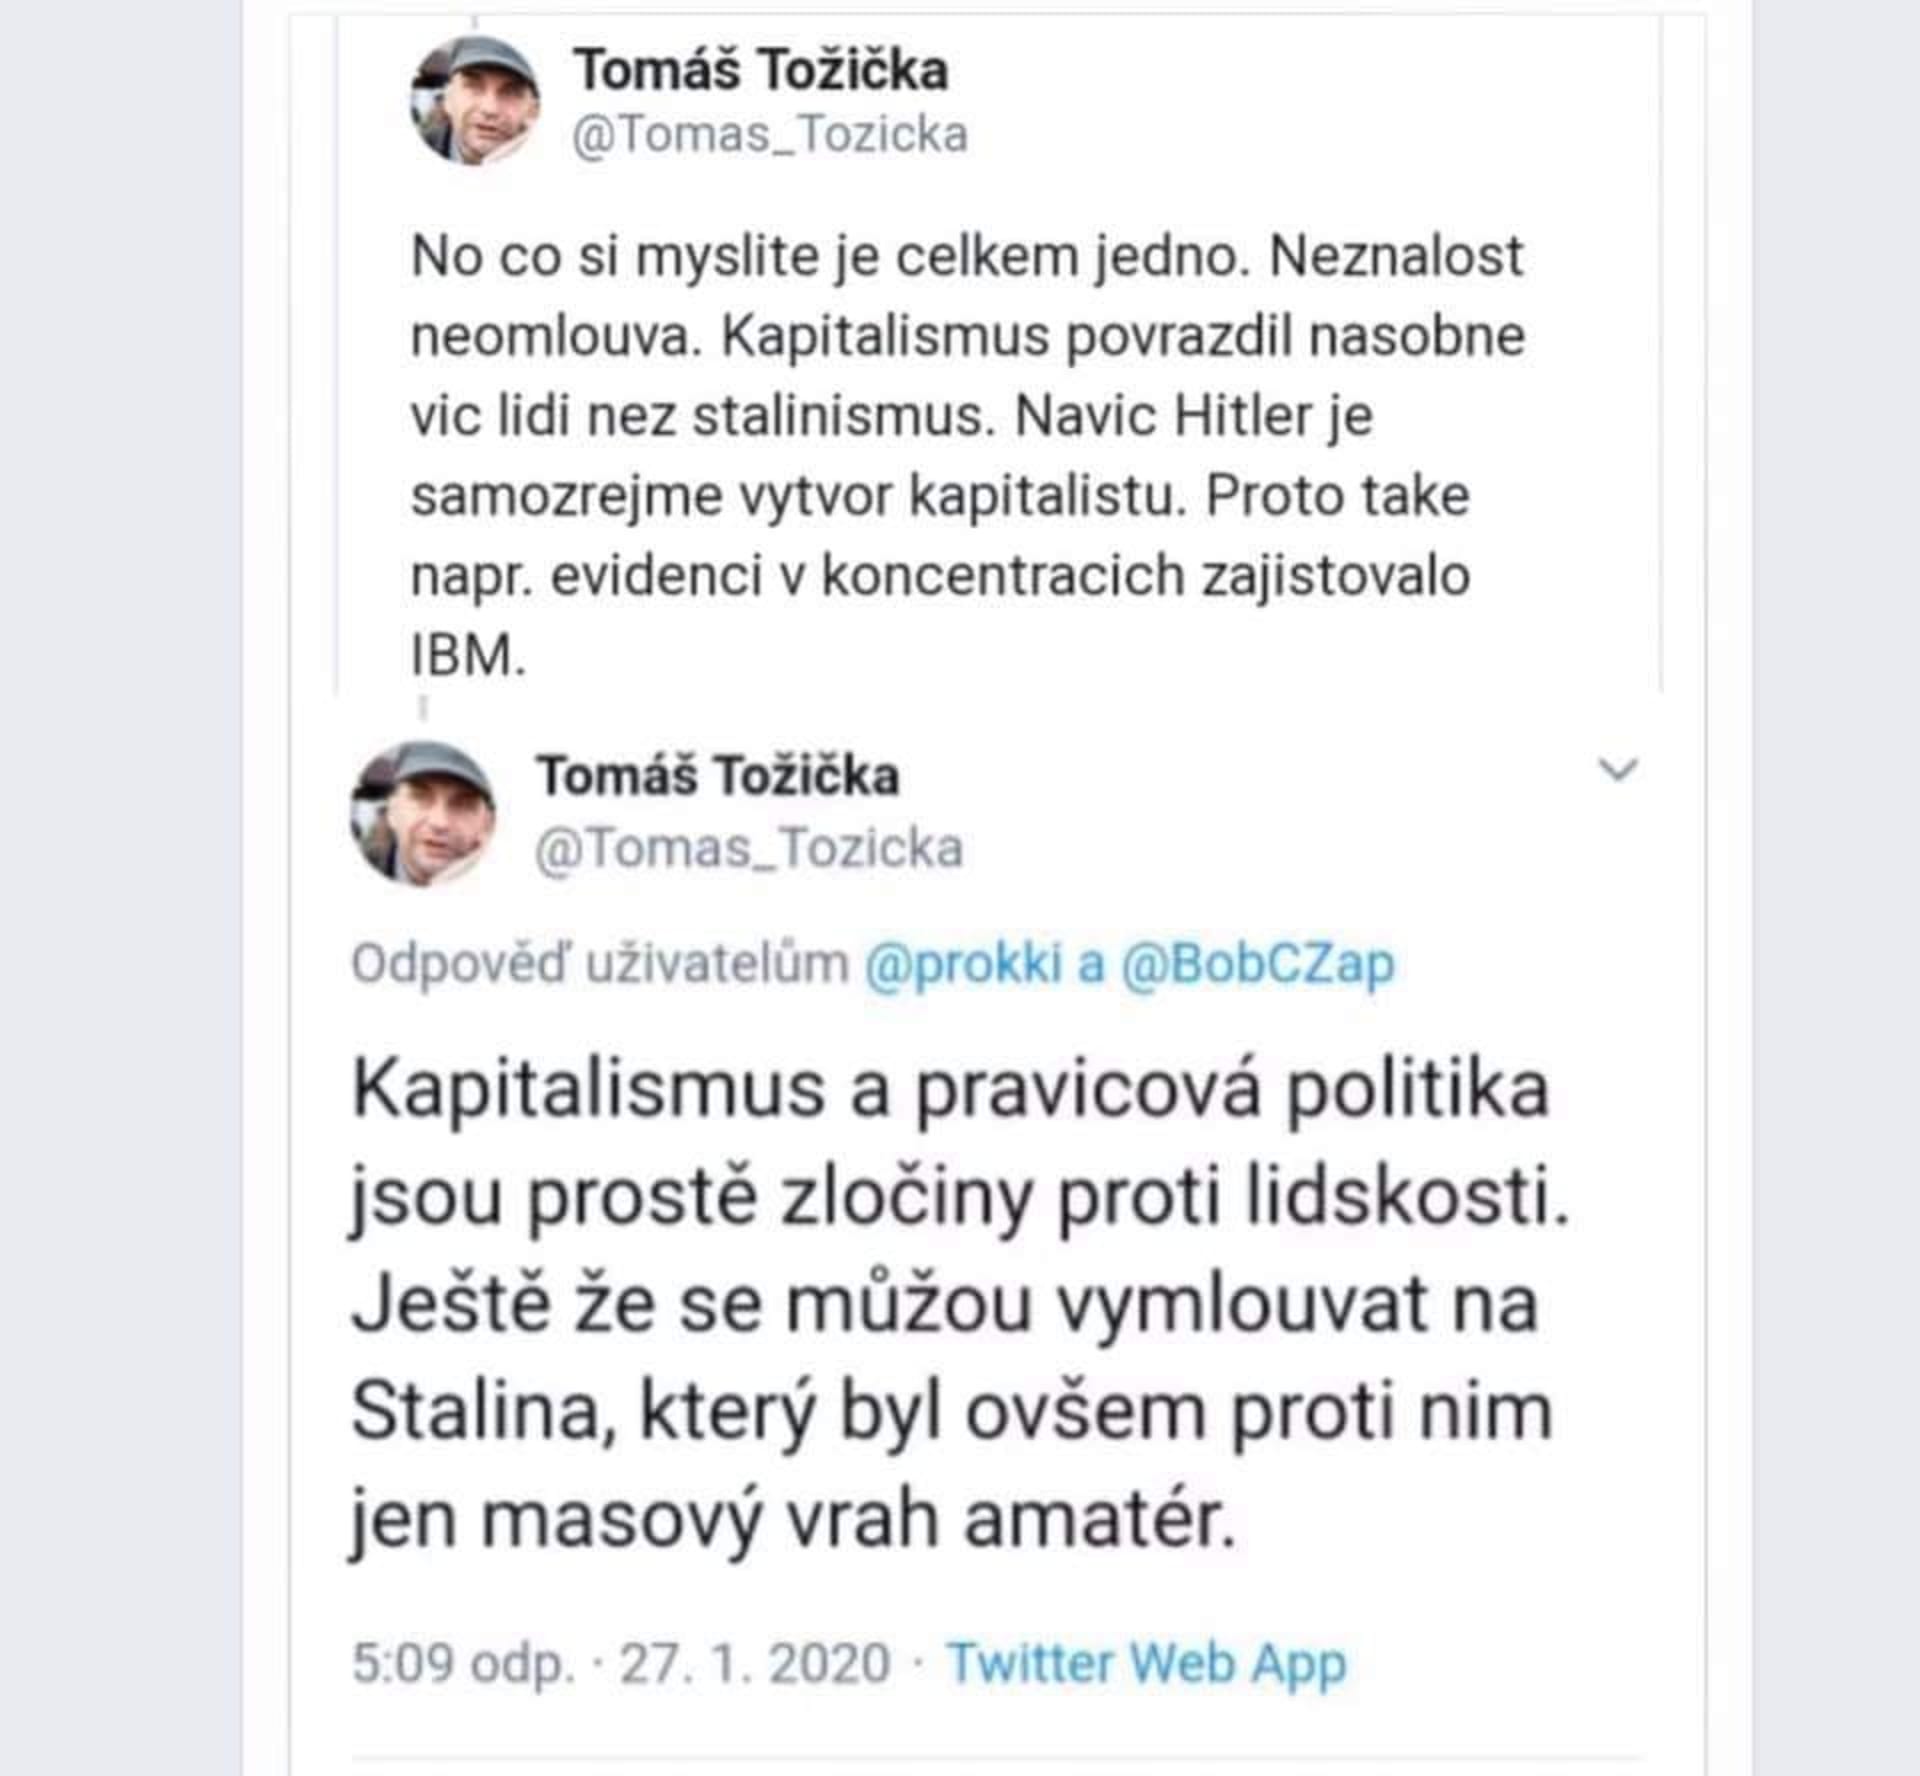 Kritizovaný Tweet Tomáše Tožičky